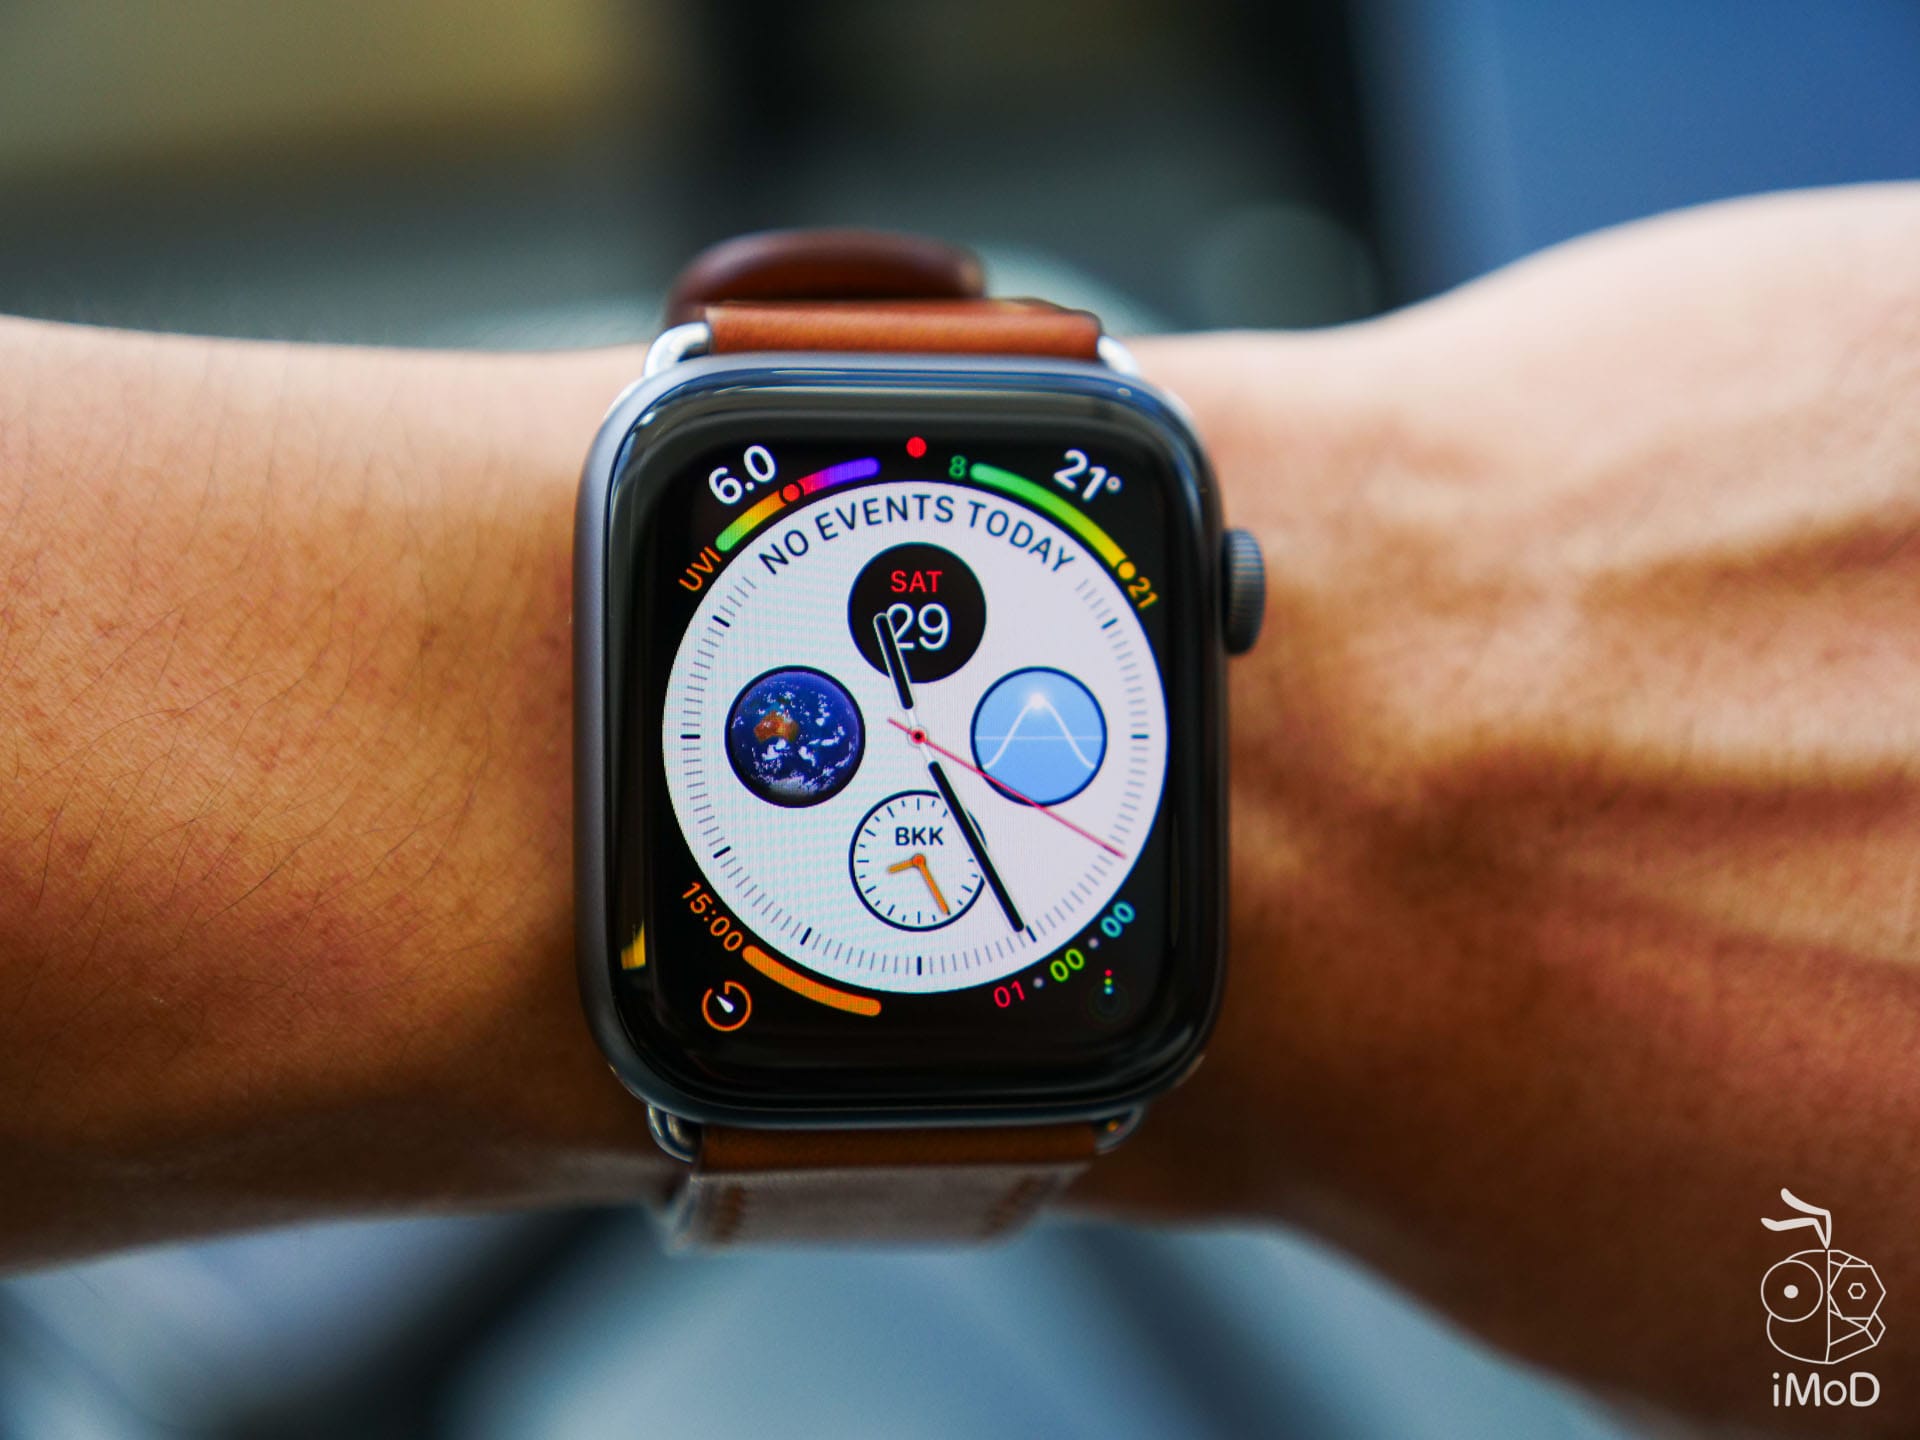 รีวิว Apple Watch Series 4 กับ 11 เดือนที่ผ่านมาประสบการณ์ใช้งานเป็นอย่างไร